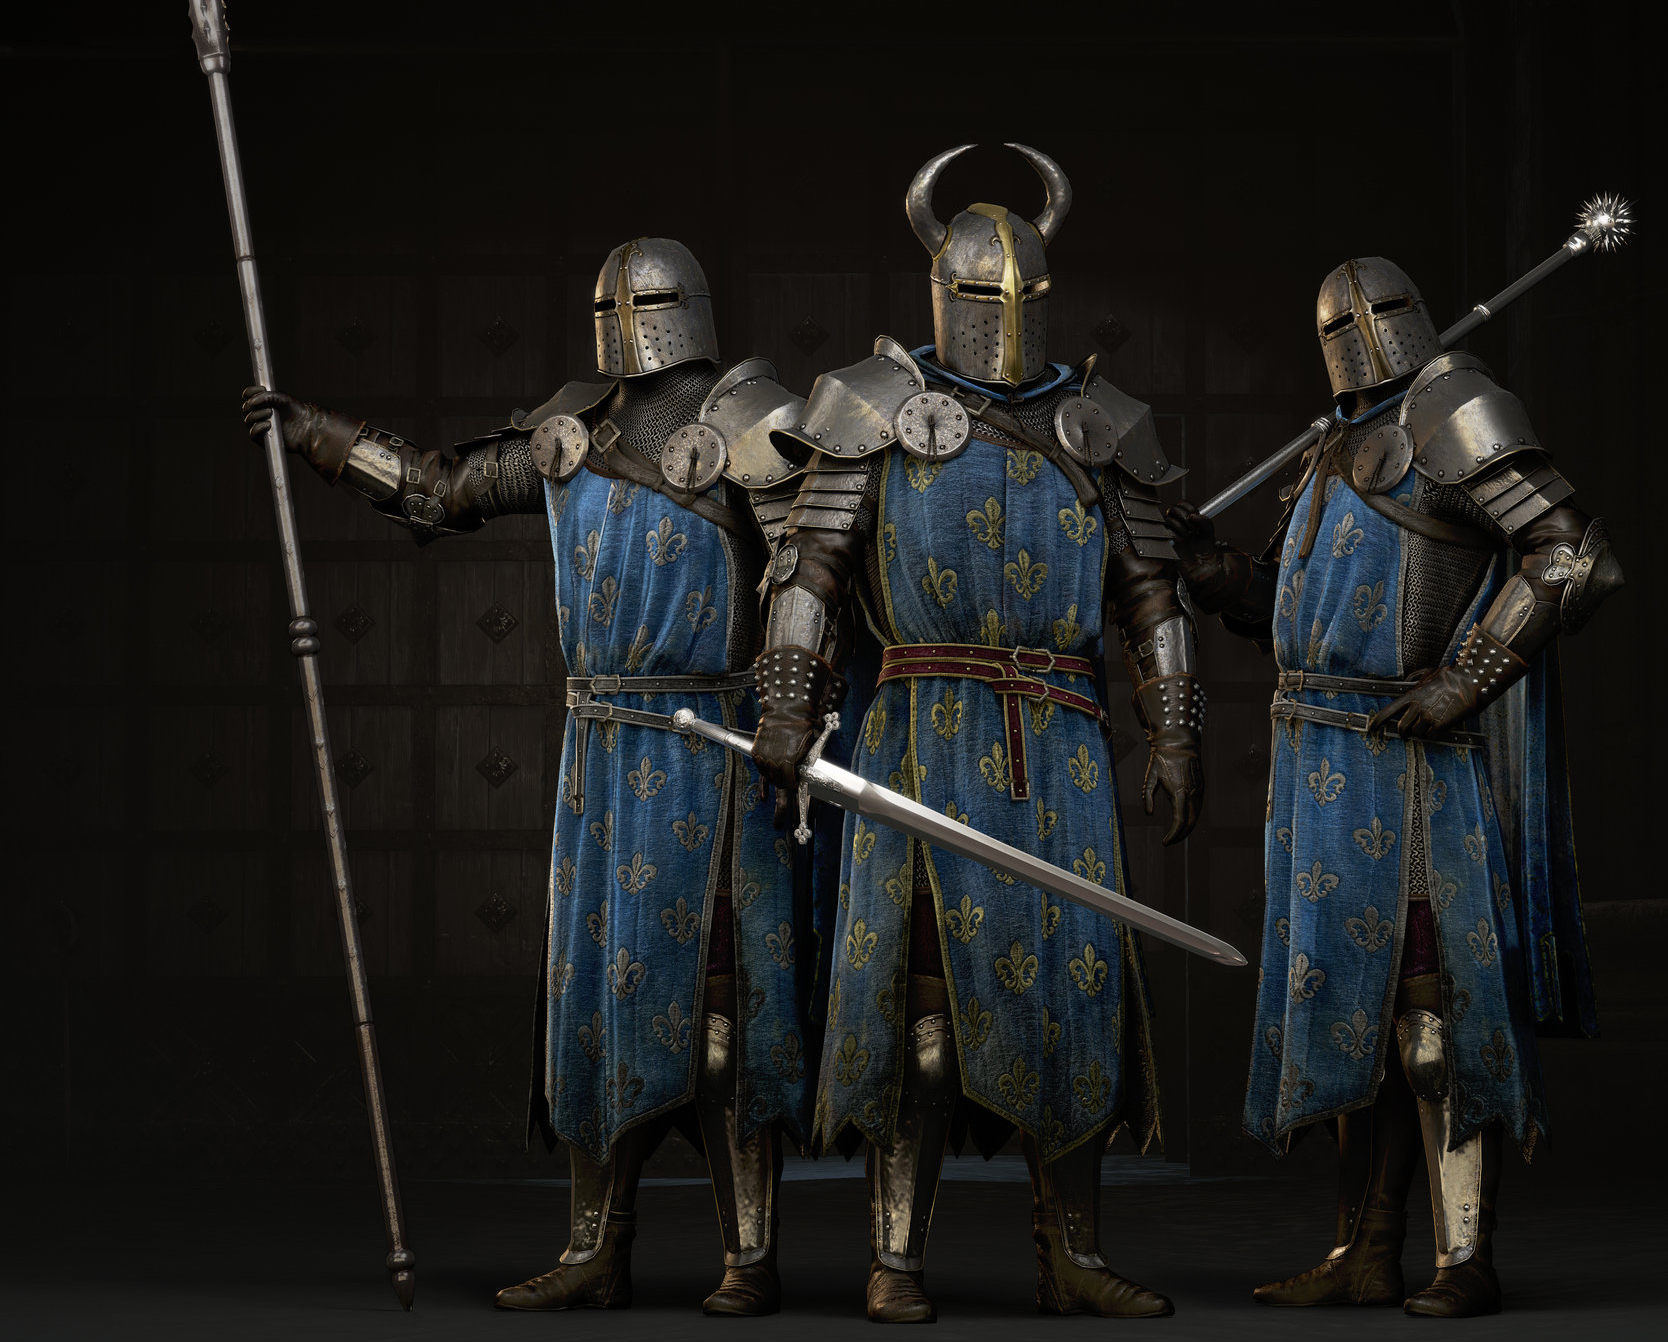 Blue cloak guards